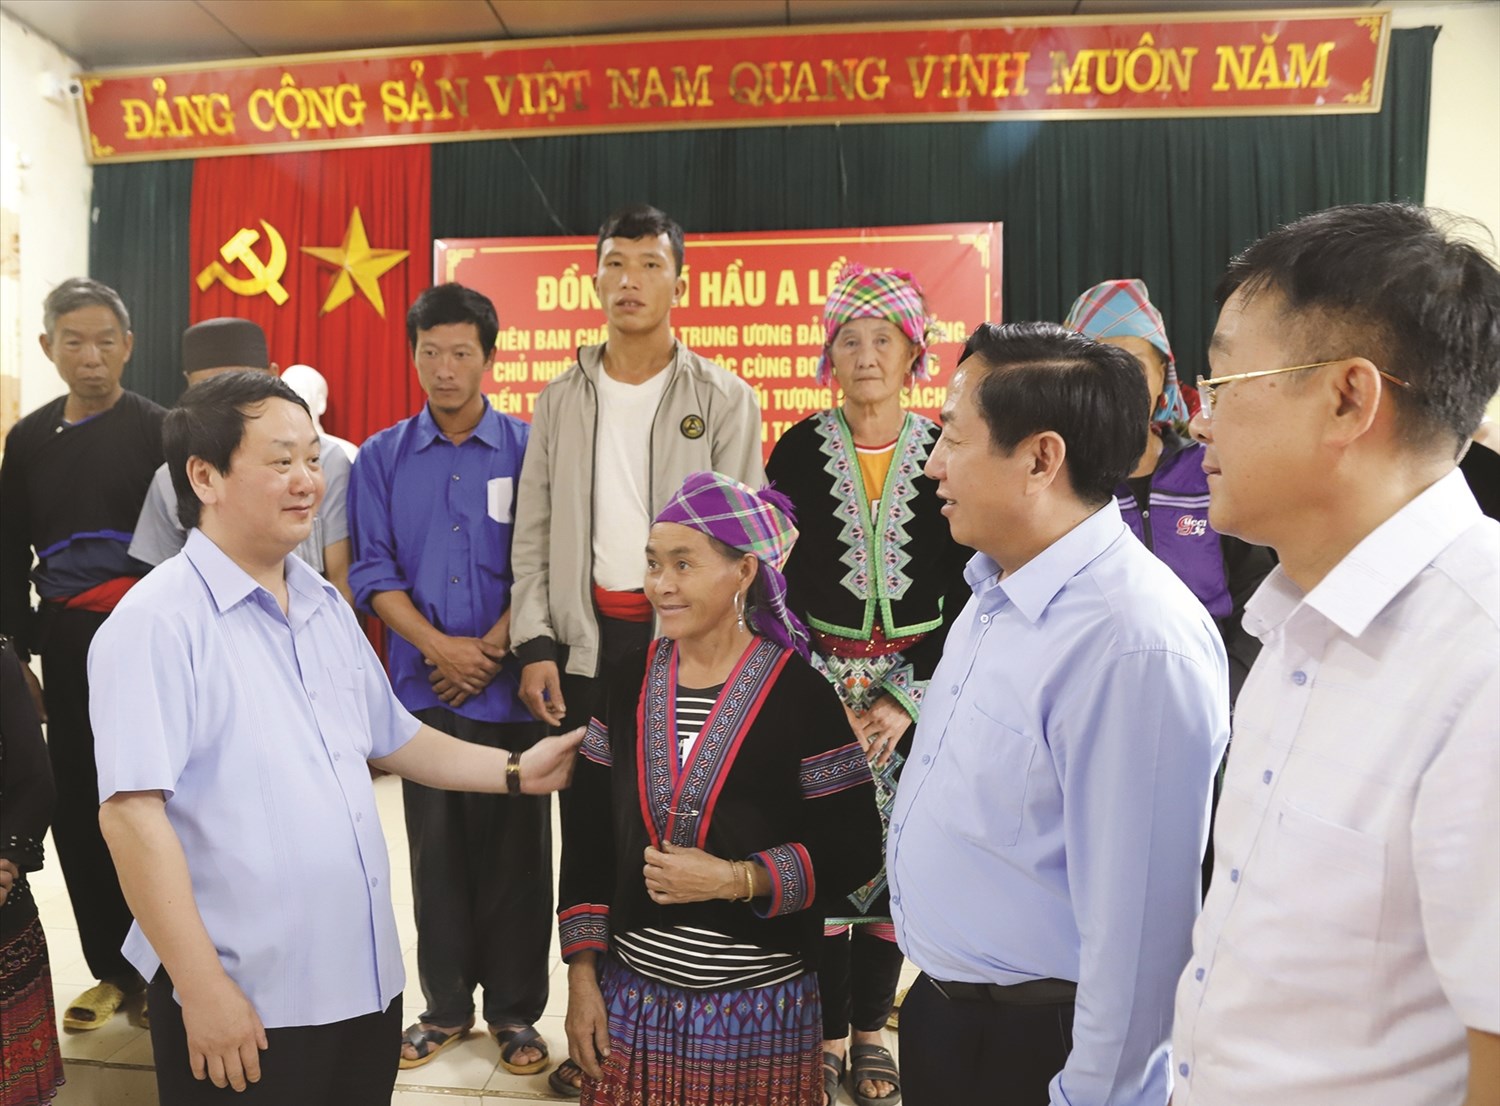 Bộ trưởng, Chủ nhiệm Ủy ban Dân tộc Hầu A Lềnh trò chuyện với lãnh đạo và đồng bào các DTTS tỉnh Lai Châu (tháng 6/2022).